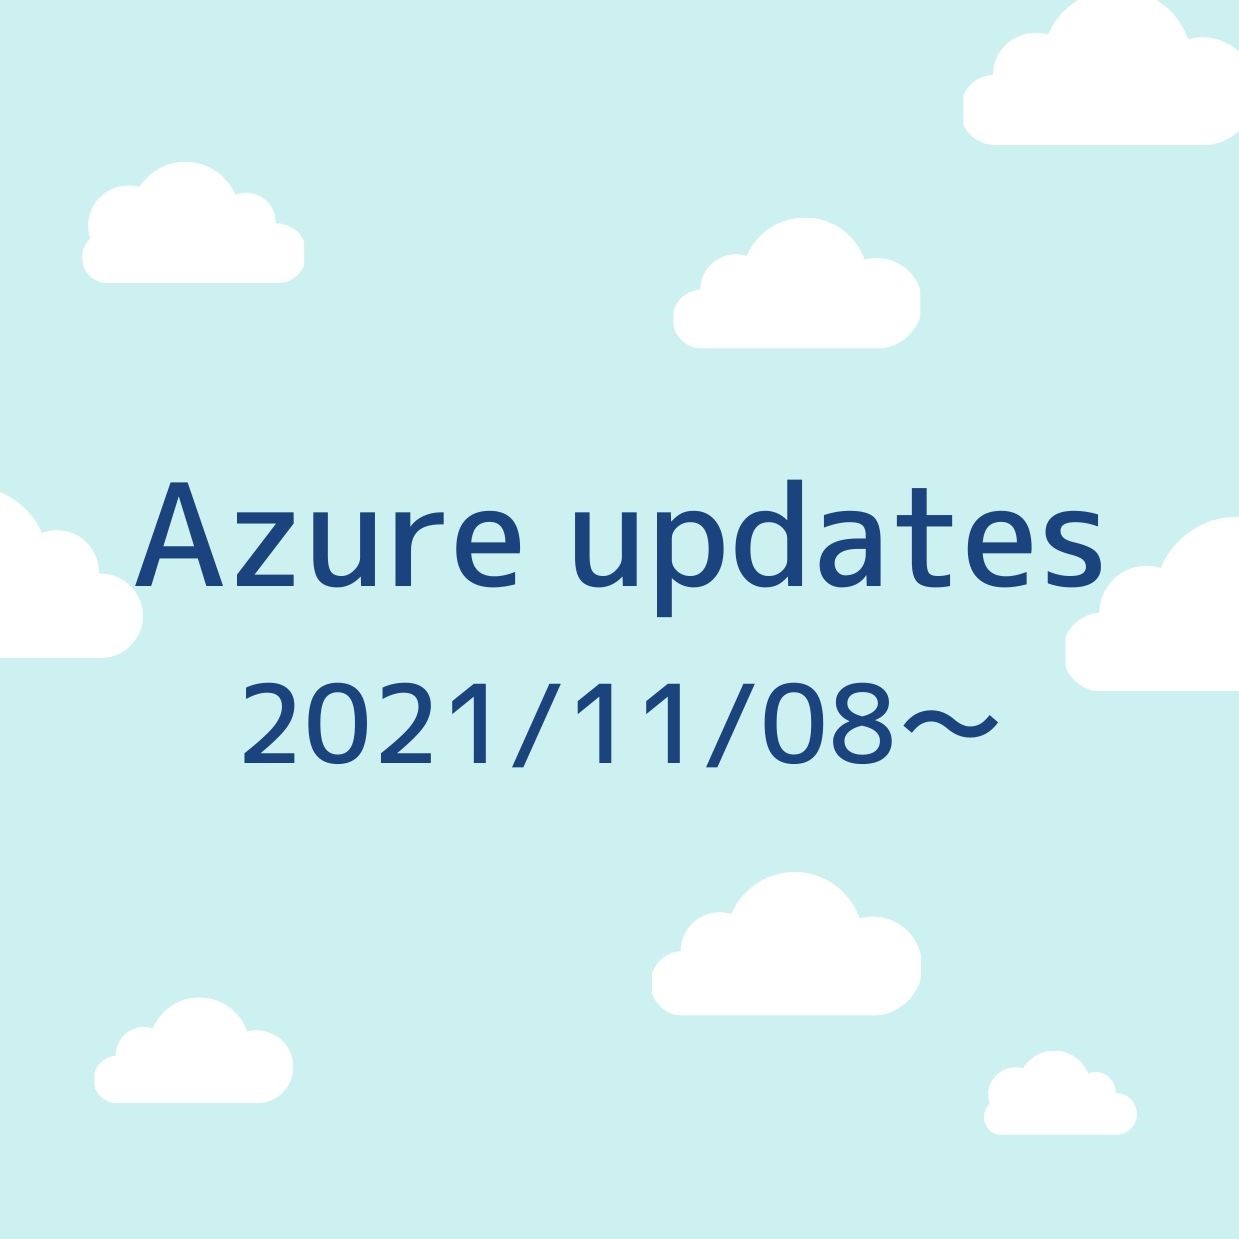 2021/11/08週の Azure updates 日本語速報